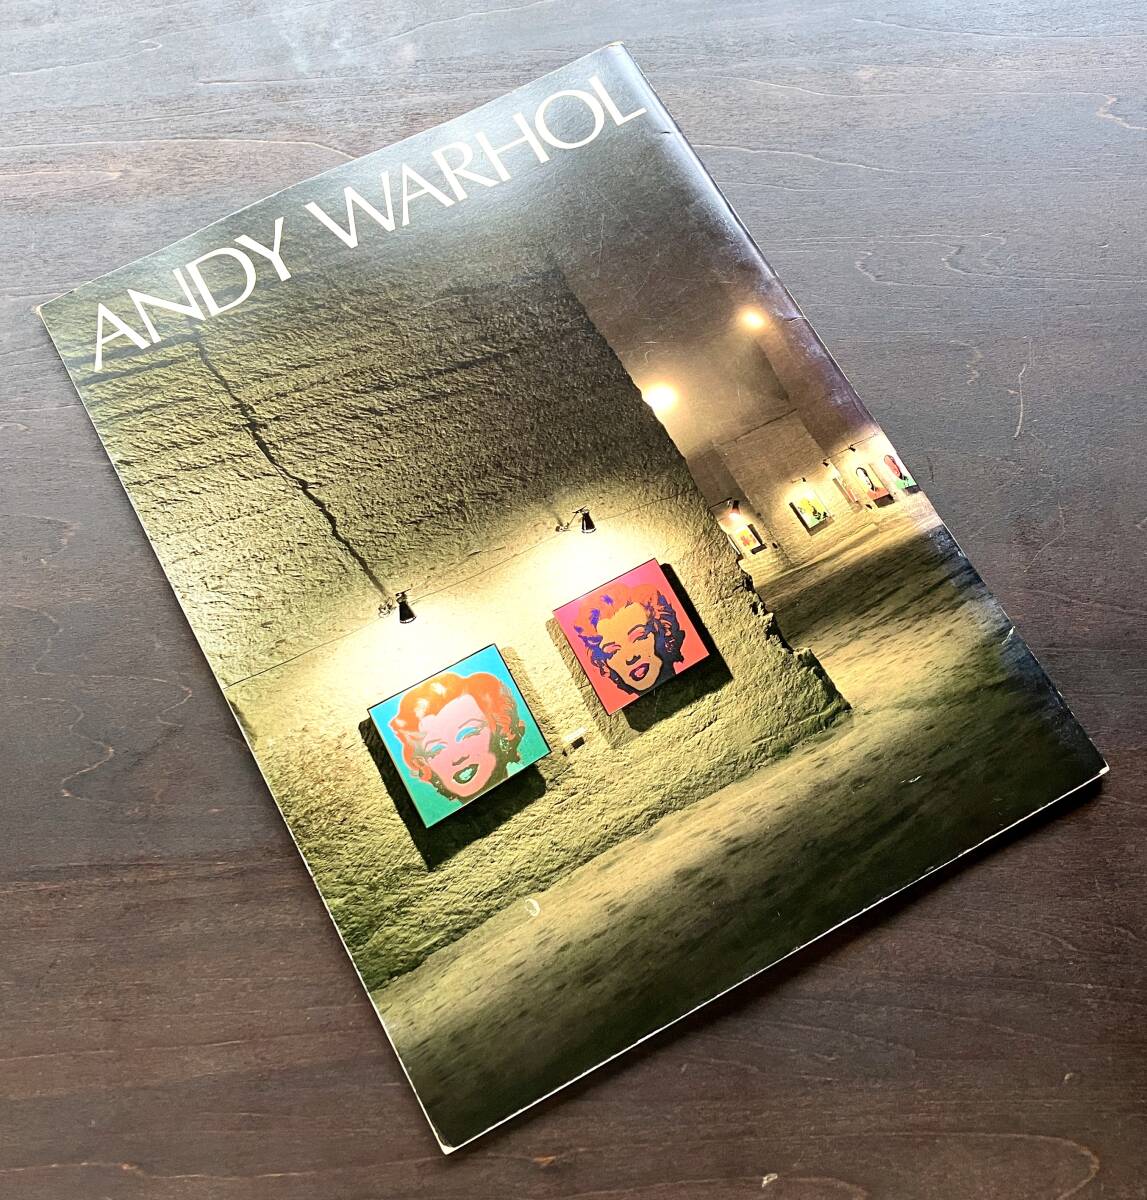 【図録】『 ANDY WARHOL アンディ・ウォーホル展 』1984 ●ナビオギャラリー 現代版画センター 新聞広告 ラッツ&スター 立松和平 冊子 薄本_画像1